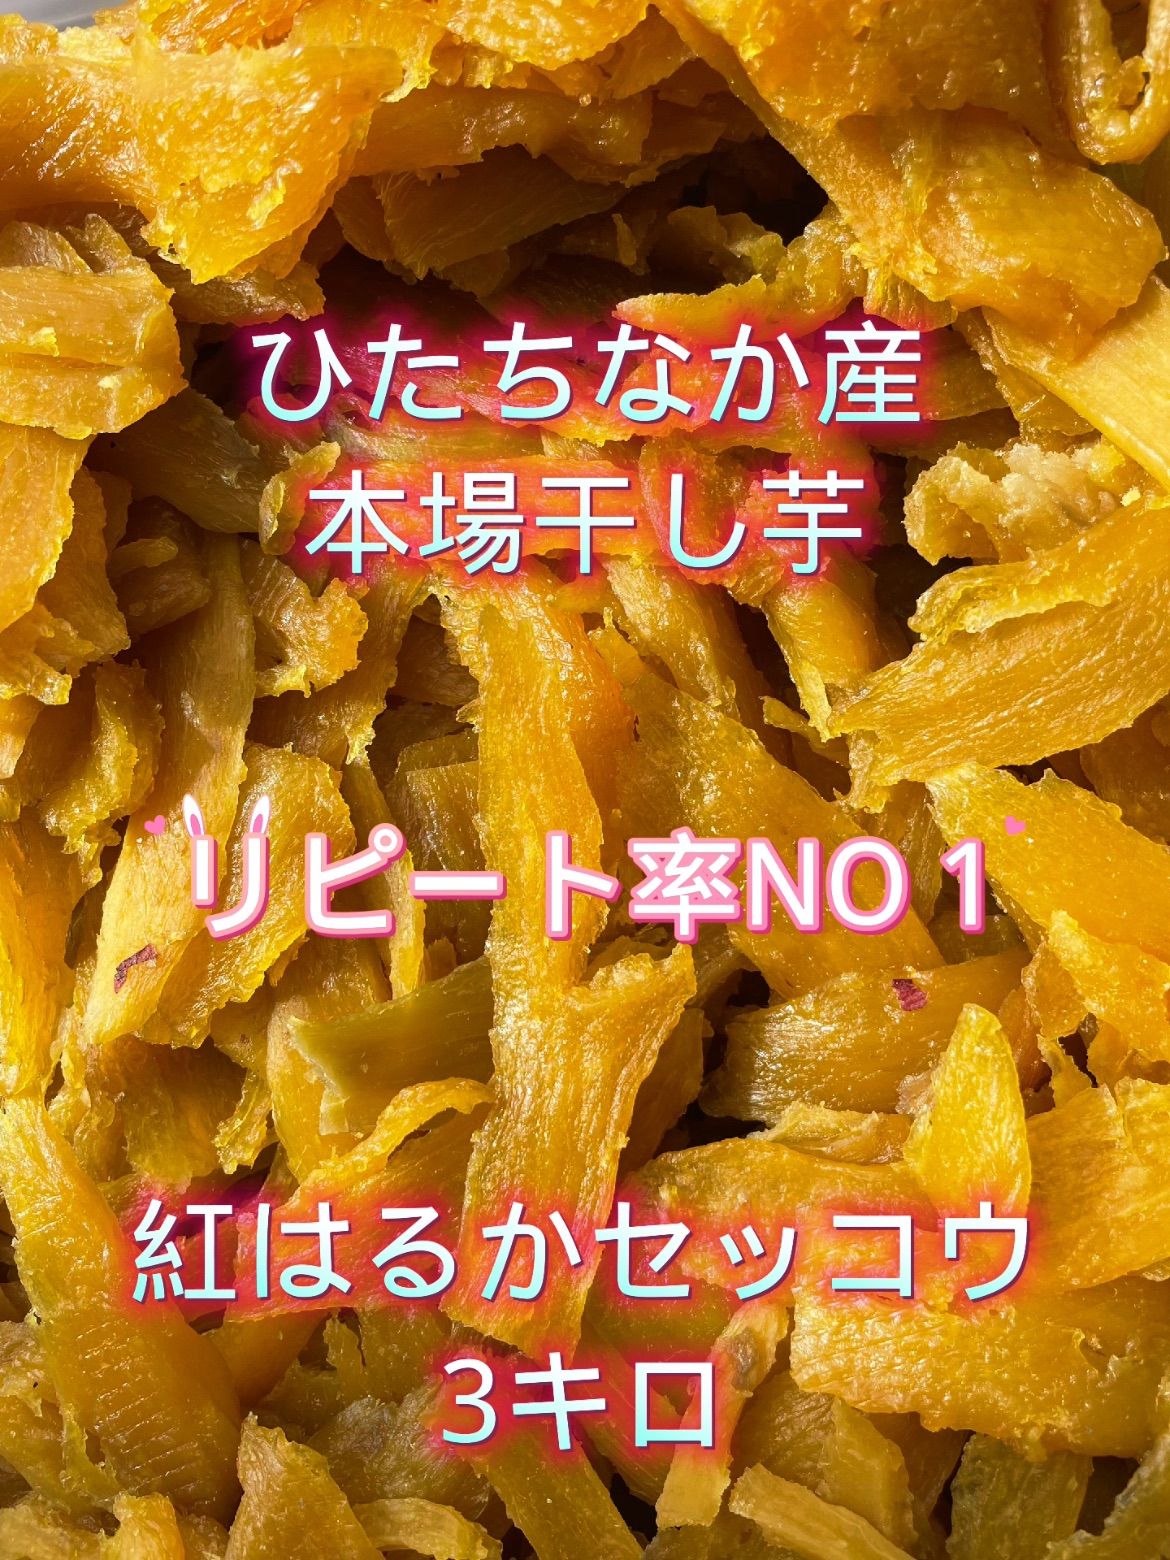 S3K 茨城県産  柔らかい甘い 黄金干し芋 訳あり 紅はるか 切り落とし3キロ